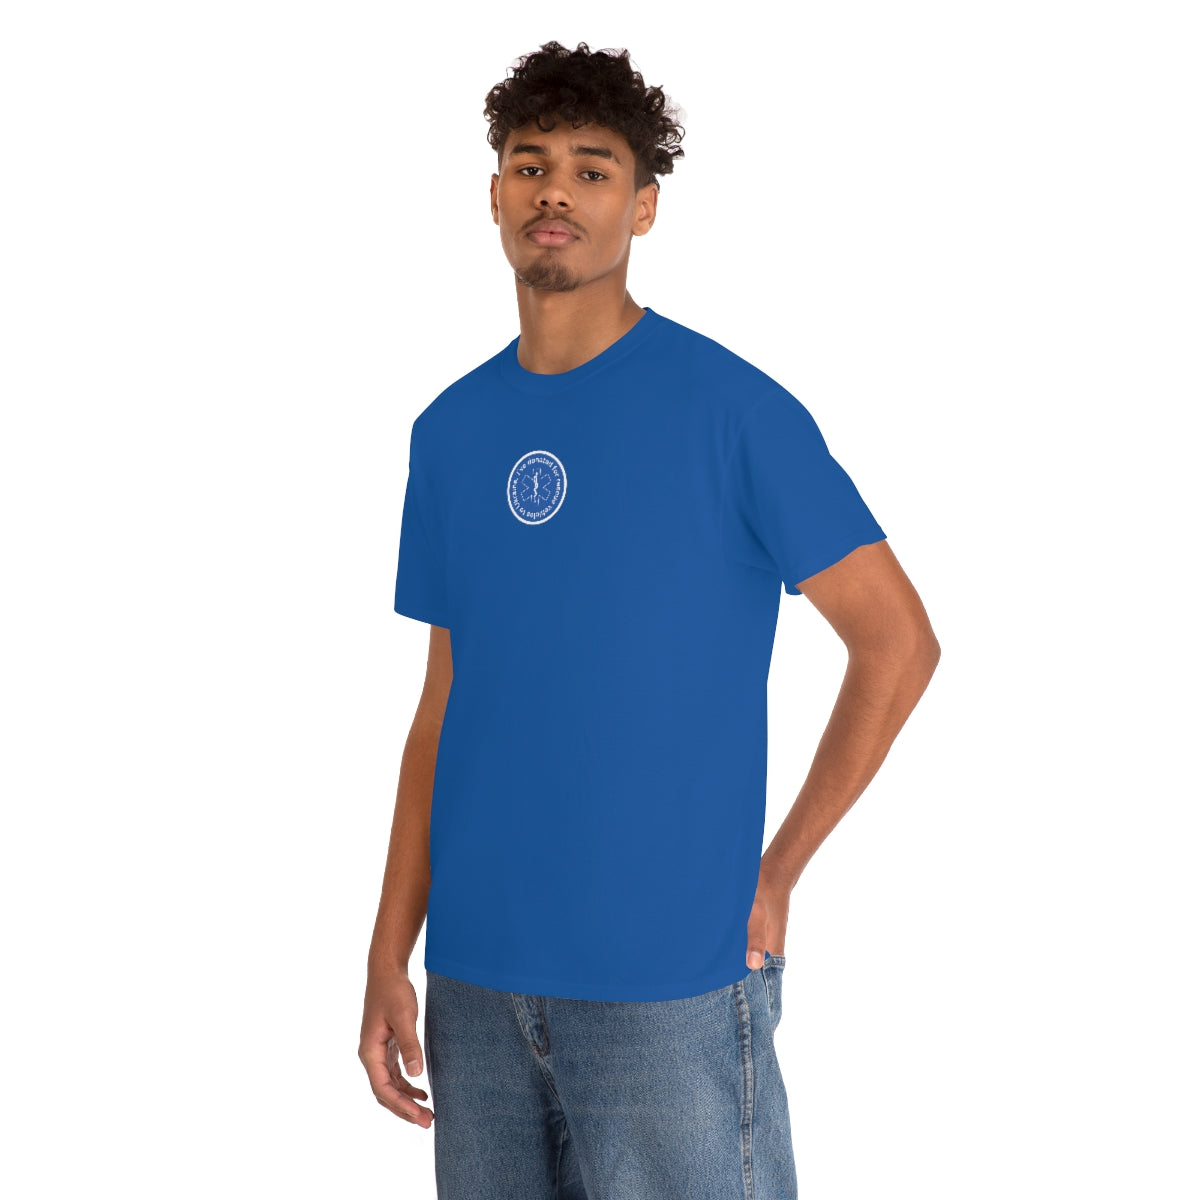 Gespendet - Unisex-T-Shirt